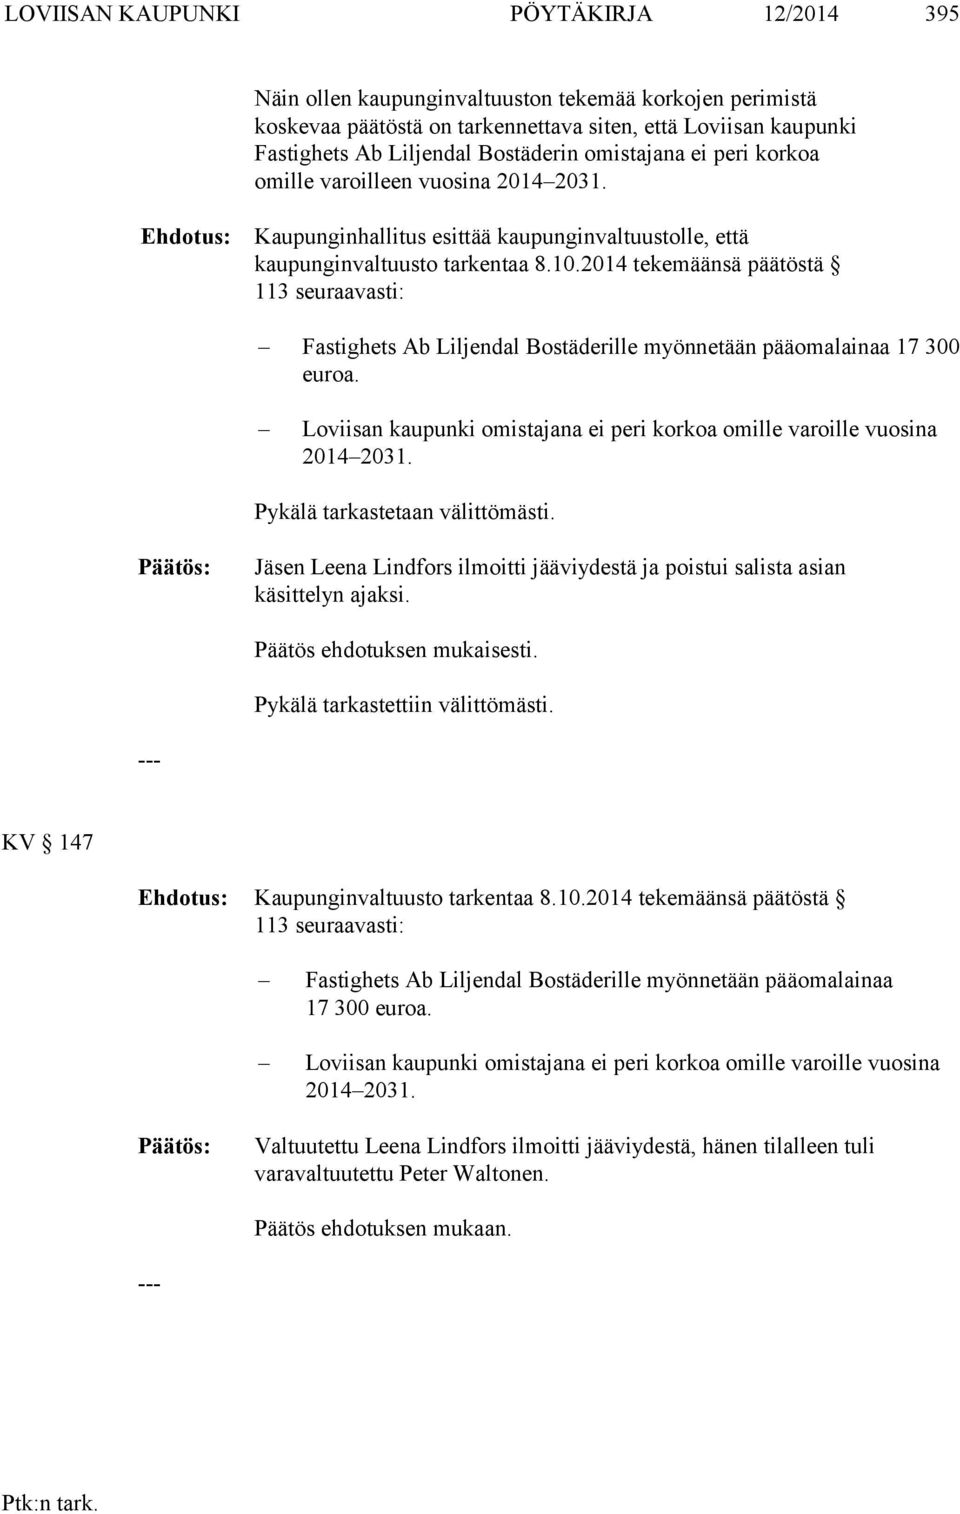 2014 tekemäänsä päätöstä 113 seuraavasti: Fastighets Ab Liljendal Bostäderille myönnetään pääomalainaa 17 300 euroa. Loviisan kaupunki omistajana ei peri korkoa omille varoille vuosina 2014 2031.